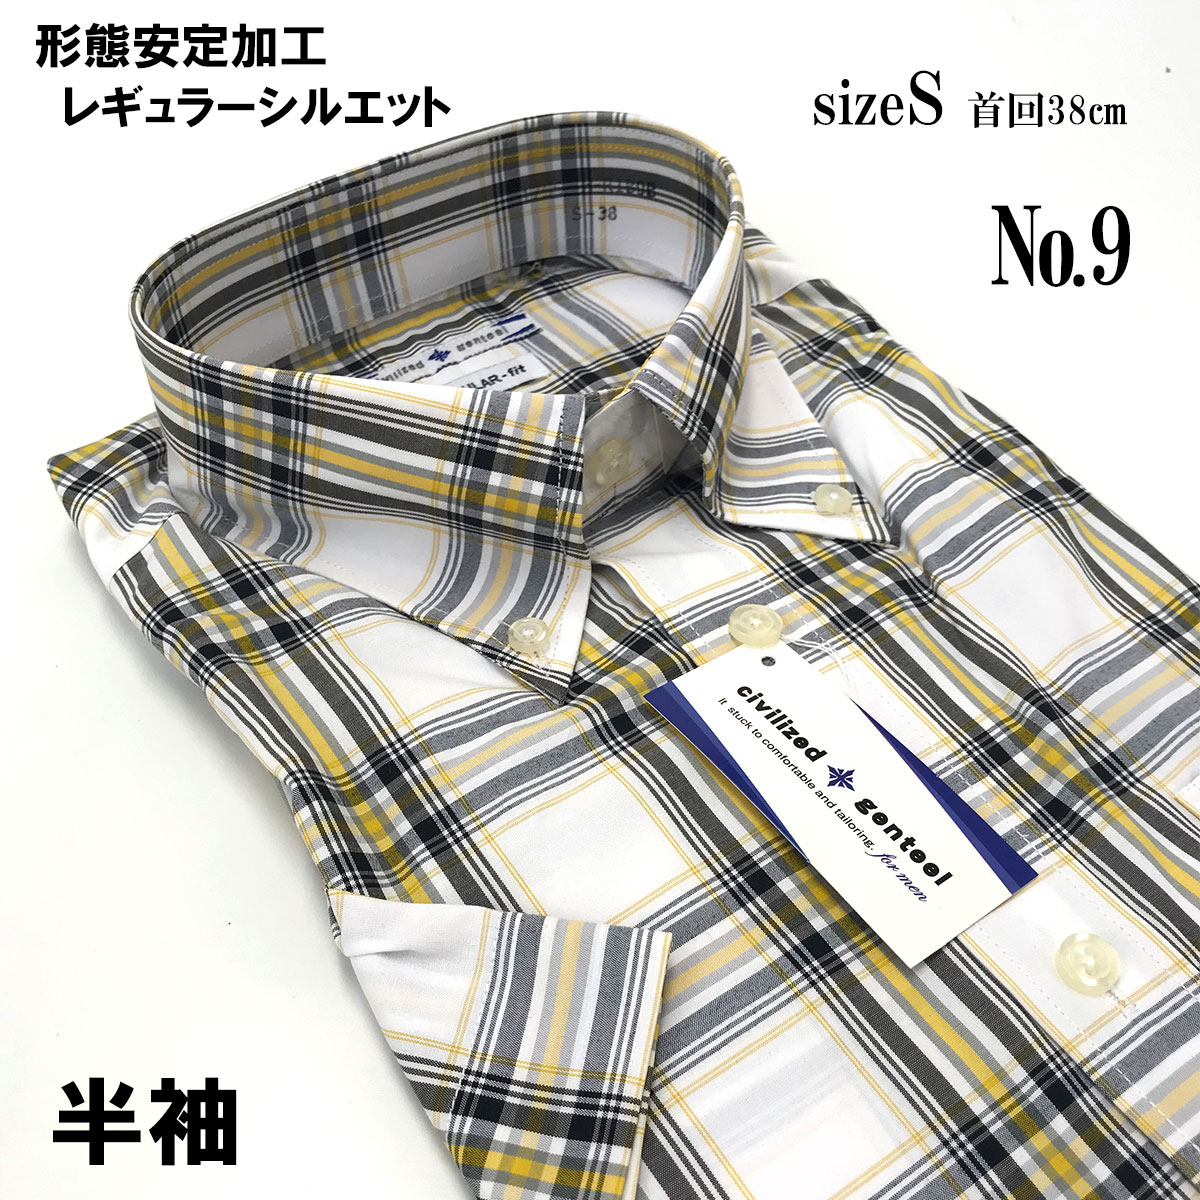 ワイシャツ 半袖 Sサイズ メンズ ボタンダウン カッタウエイ メール便送料無料 形態安定 Yシャツ